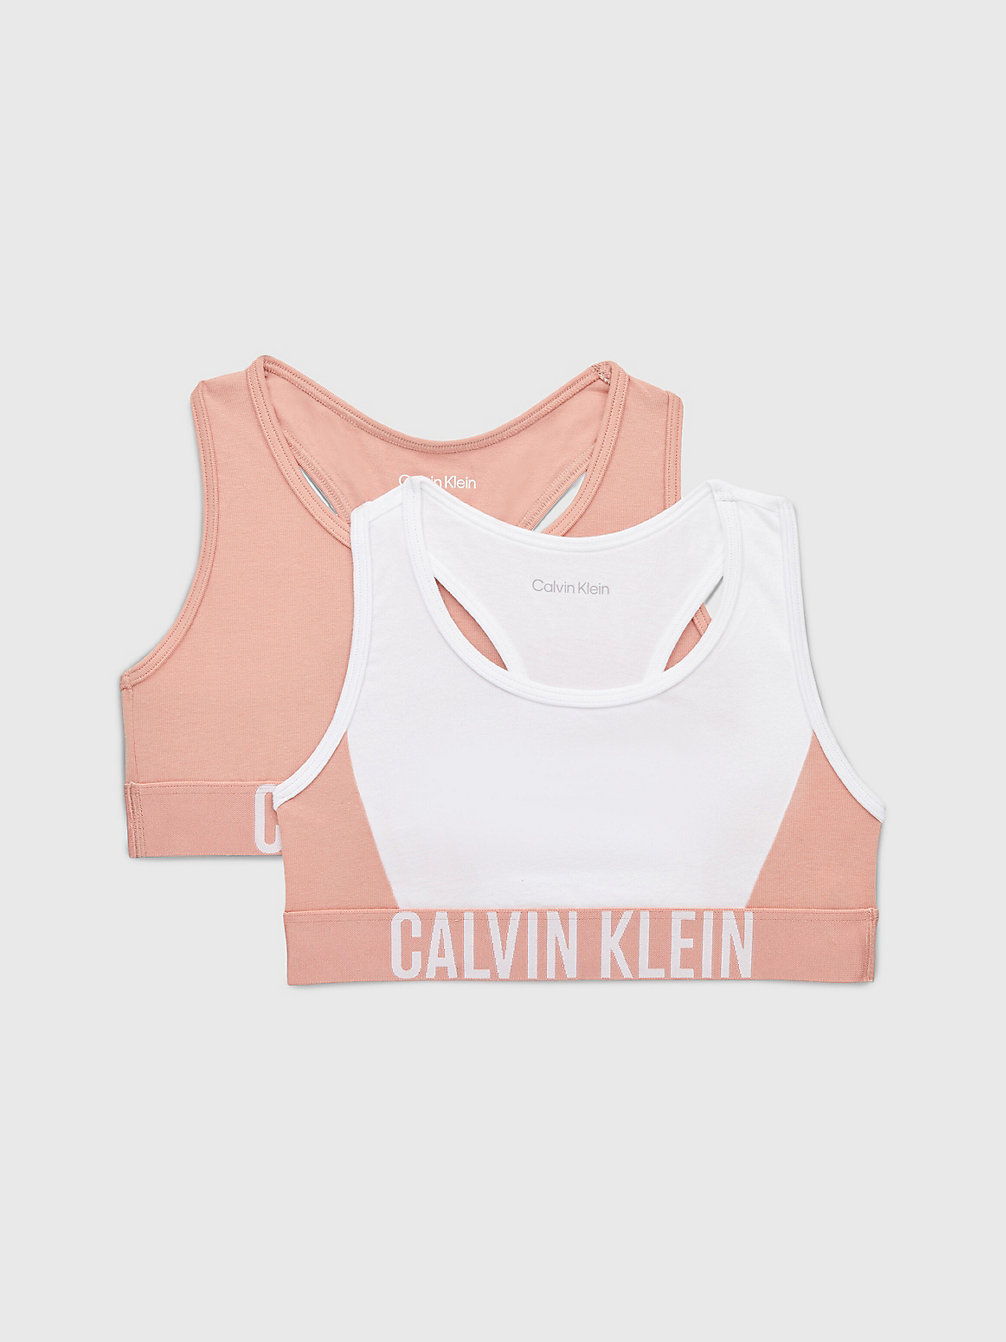 PINKMOCHA/PVHWHITE 2 Pack Girls Bralettes - Intense Power undefined girls Calvin Klein